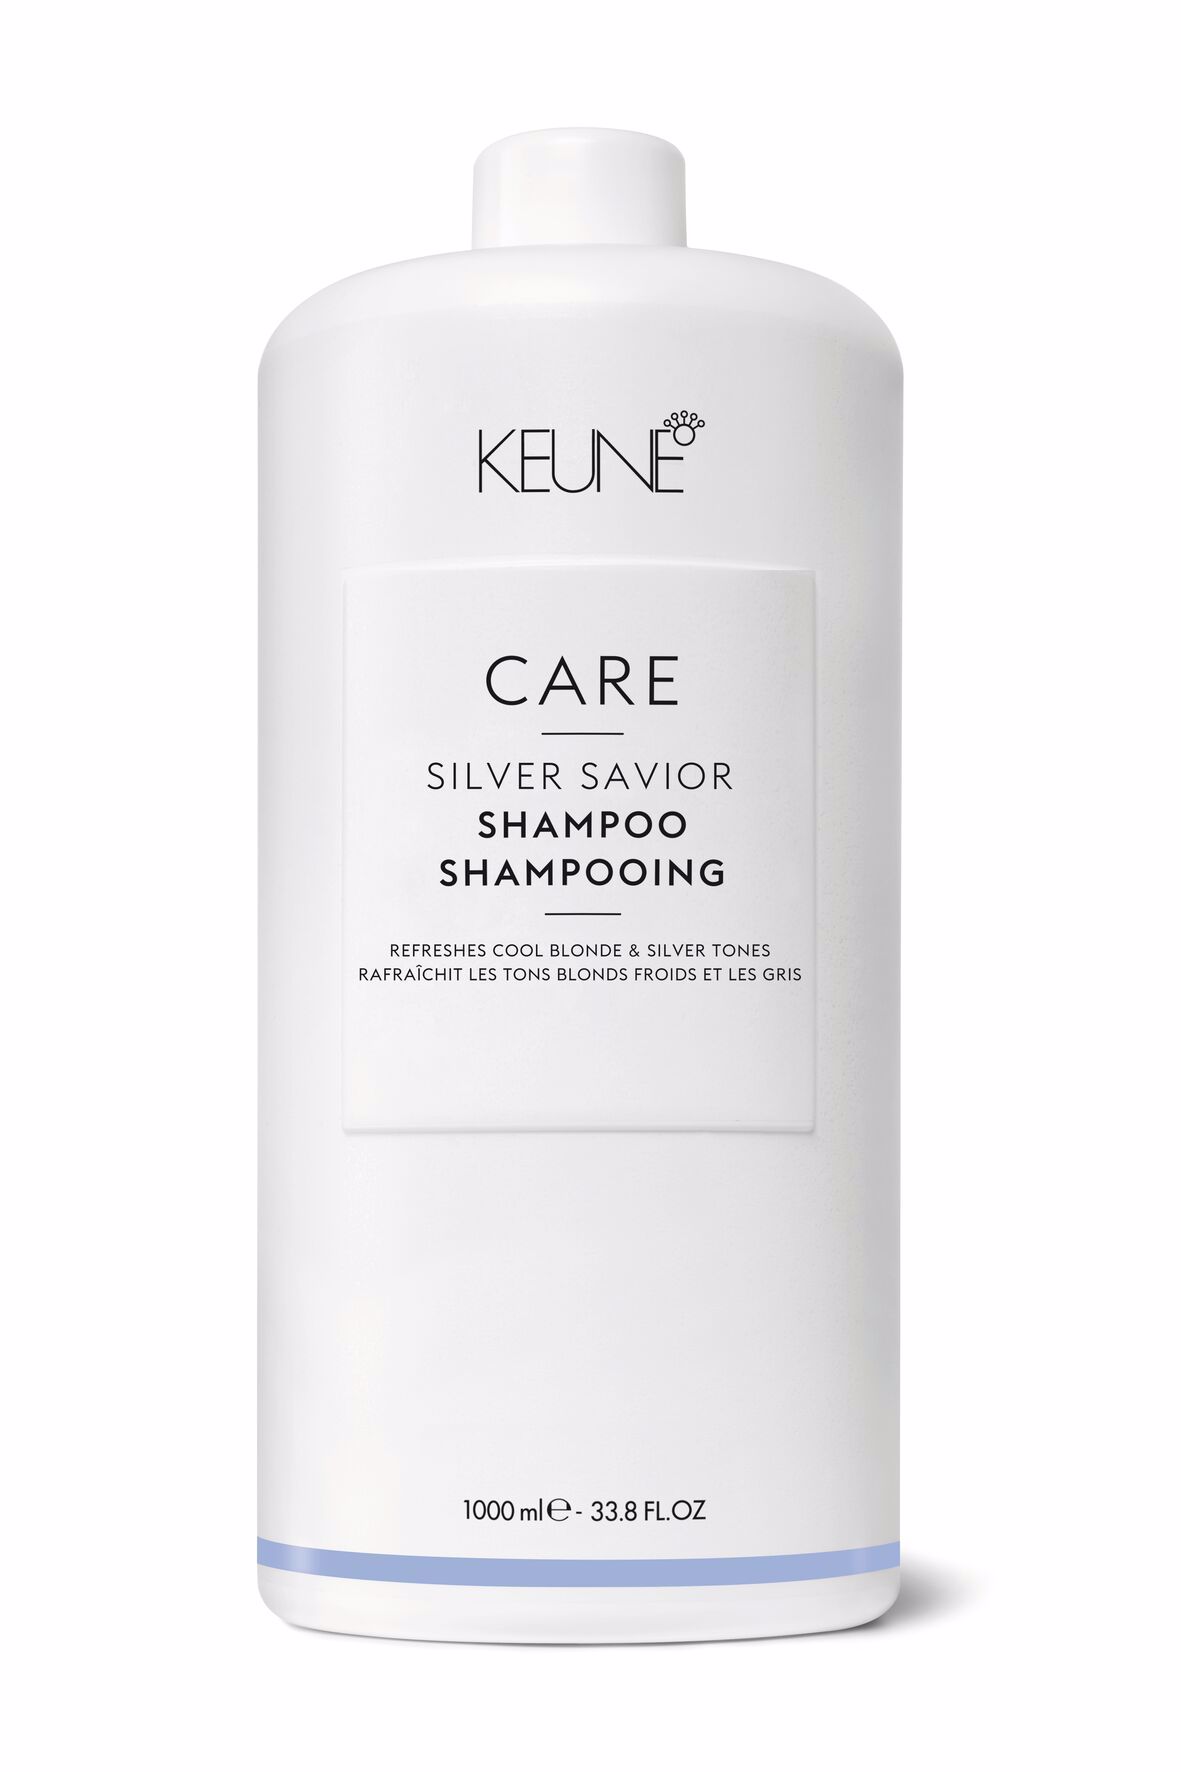 Découvrez le shampooing Care Silver Savior pour les cheveux blonds. Il protège la couleur, neutralise les tons jaunes. Les protéines de blé apportent davantage de volume. Keune.ch.